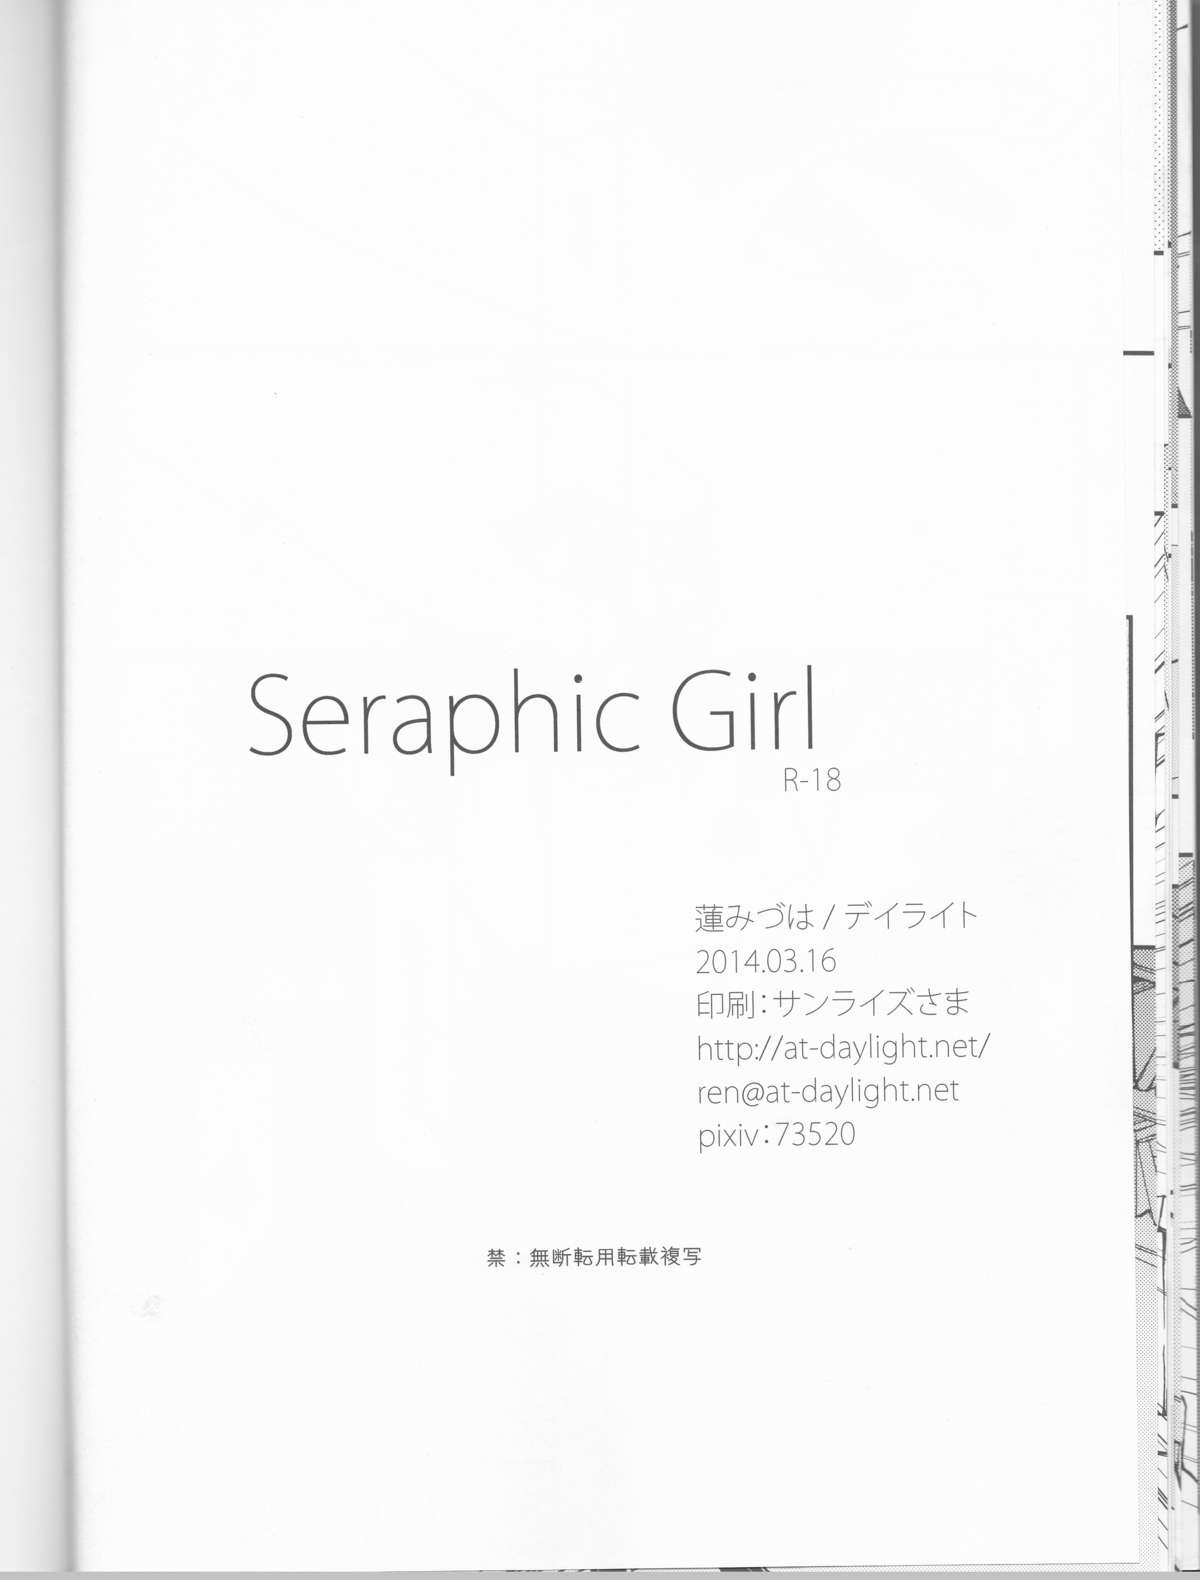 (HARUCC19) [デイライト (蓮みづは)] Seraphic Girl (キルラキル)